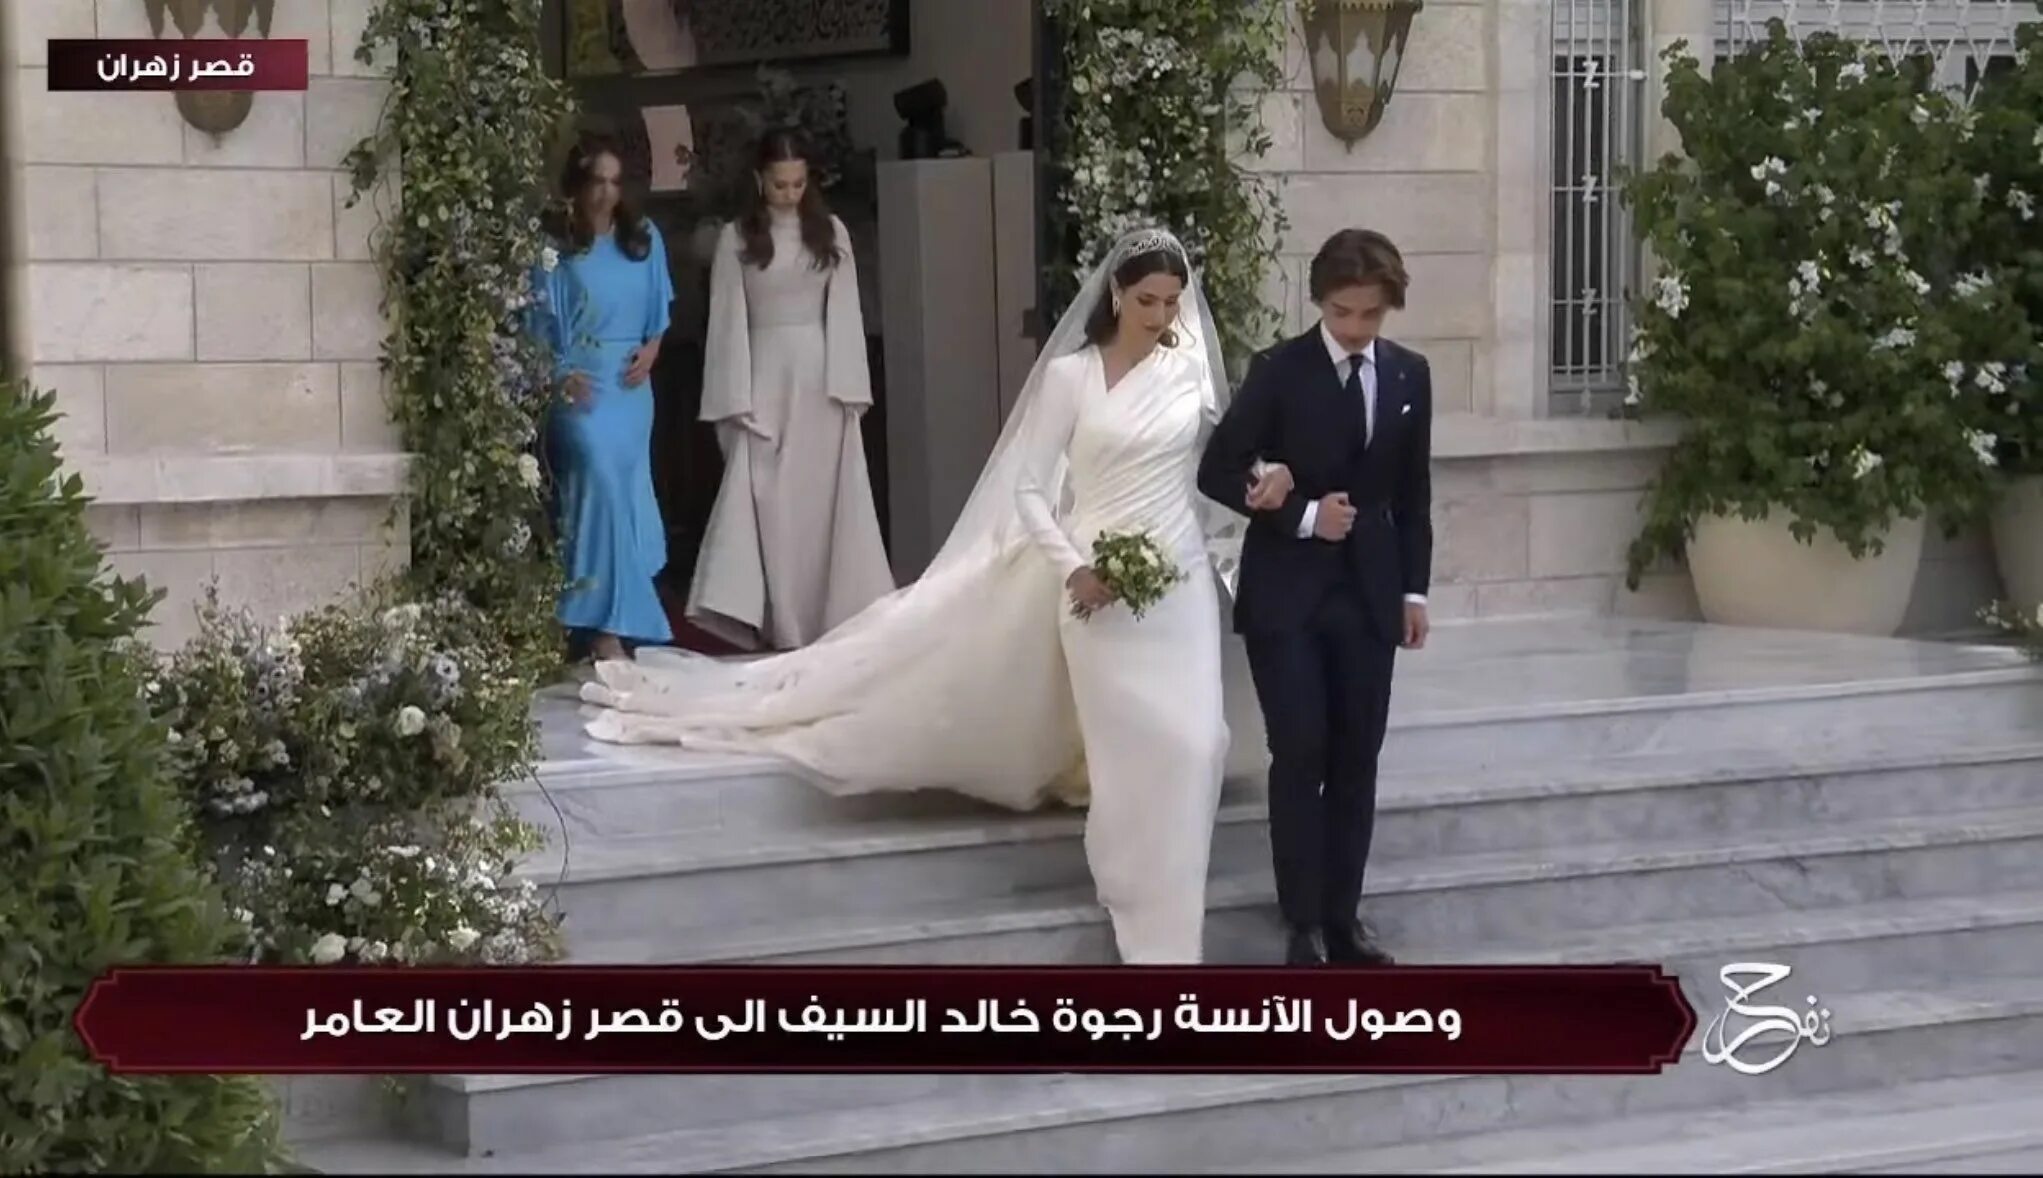 Свадьба в Иордании наследного принца. Свадьба наследного принца Иордании Хусейна. Саудовская Аравия свадьба. Свадьба без цветов. Выйти замуж за наследного принца